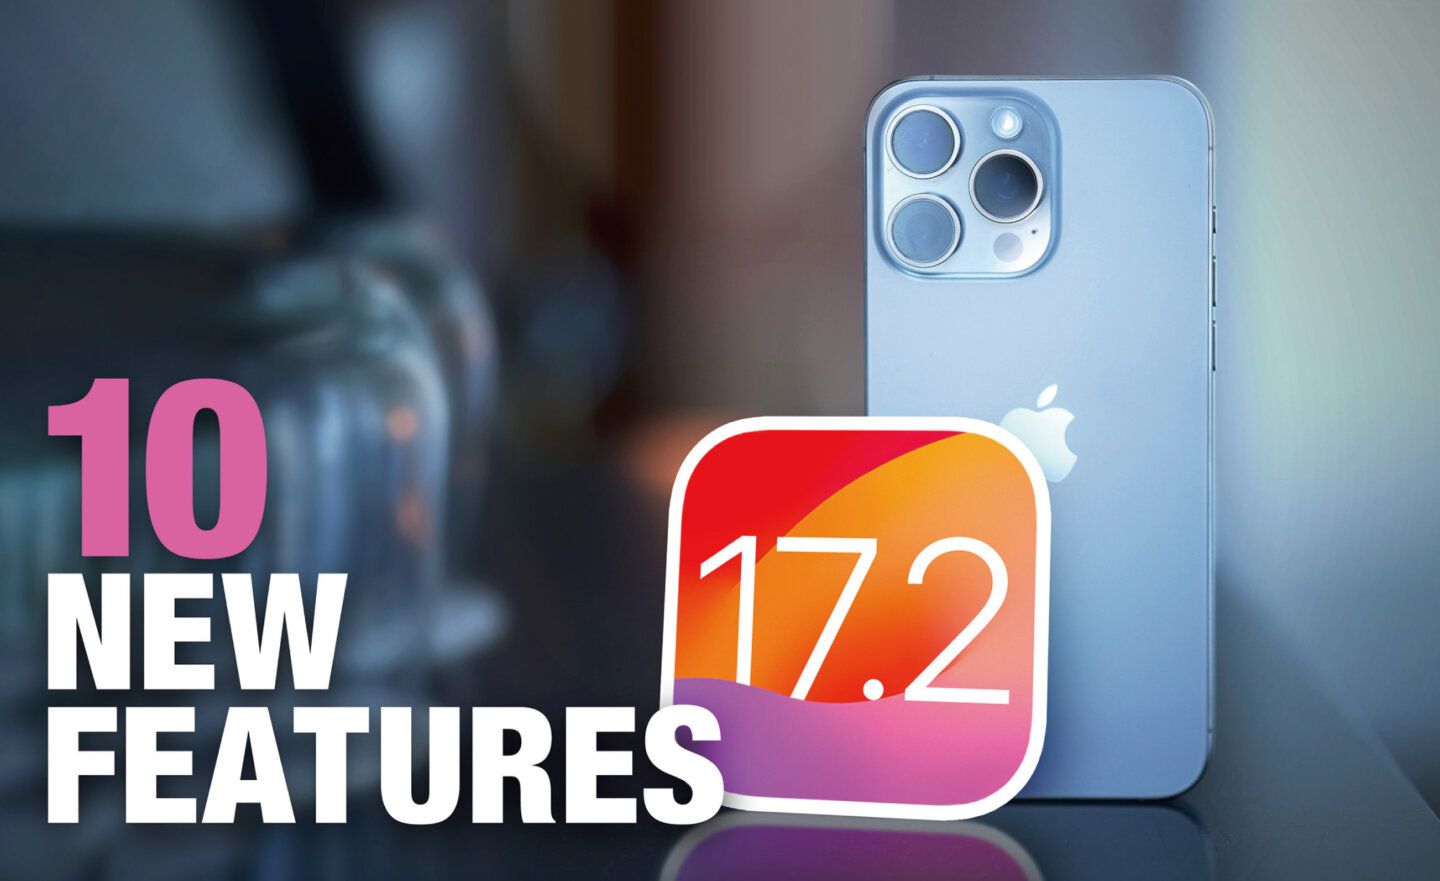 iOS 17.2 預計於 2023 年 12 月釋出，10 大新功能搶先看